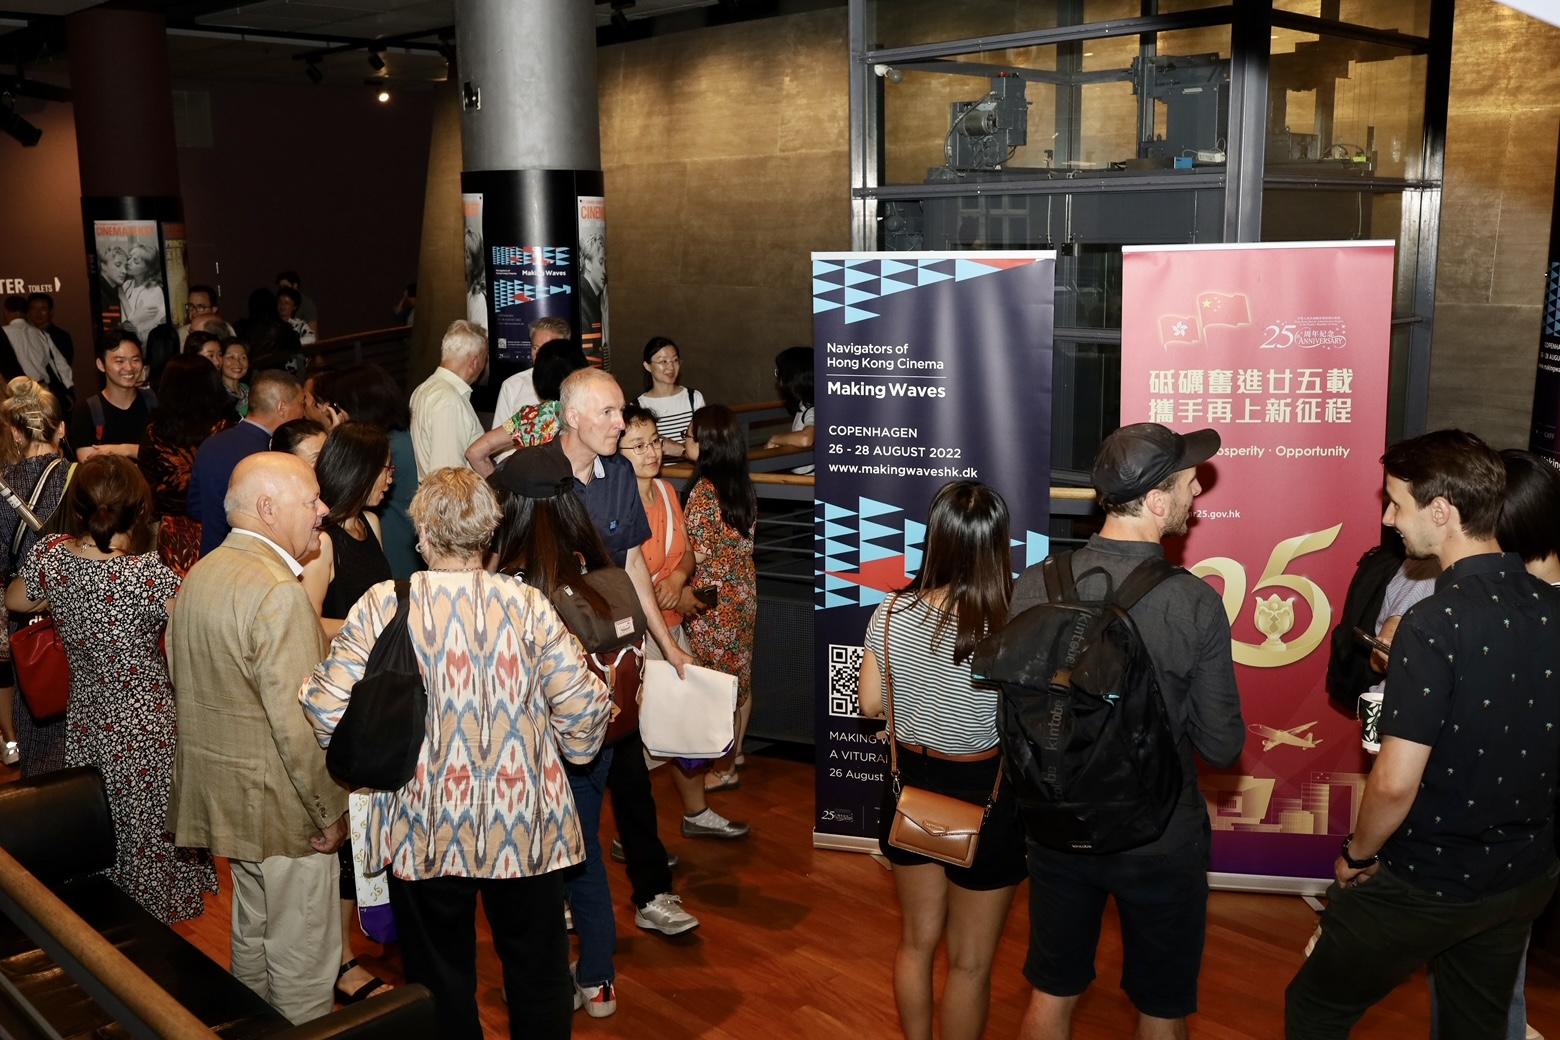 為紀念香港特別行政區成立二十五周年，香港駐倫敦經濟貿易辦事處支持「光影浪潮：香港電影新動力」，於八月二十六日至二十八日（哥本哈根時間）在丹麥哥本哈根放映一系列新香港電影和經典香港電影。圖示丹麥哥本哈根「光影浪潮：香港電影新動力」開幕放映會現場。